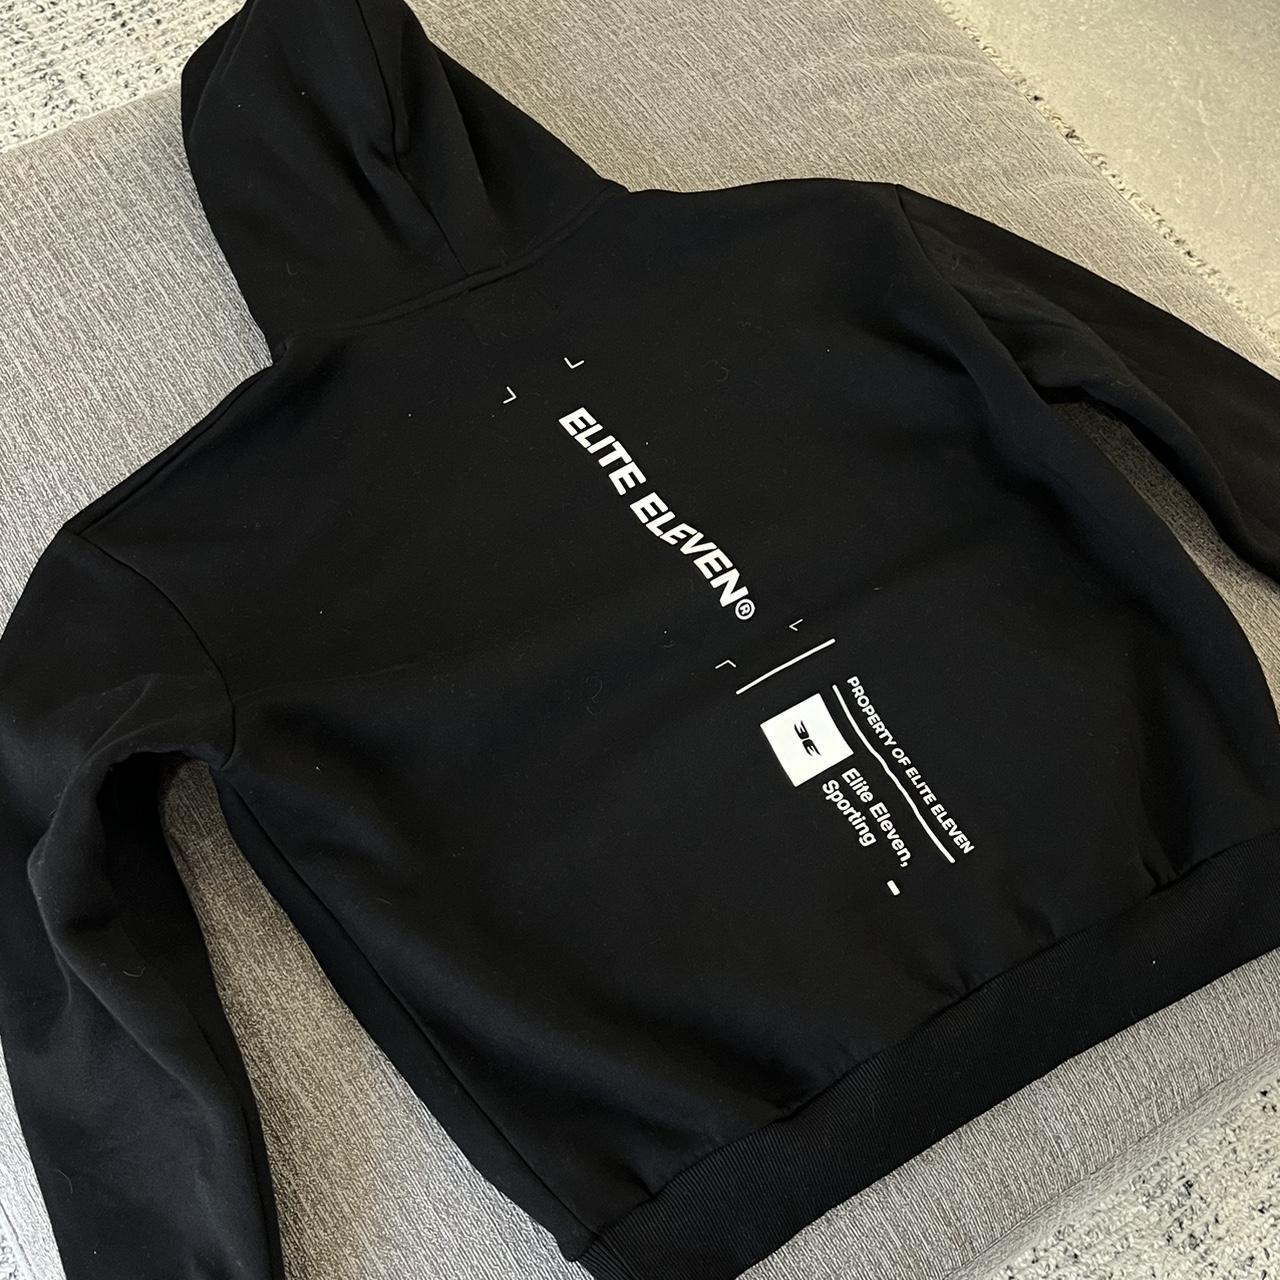 EliteEleven hoodie Men’s size medium Great condition - Depop